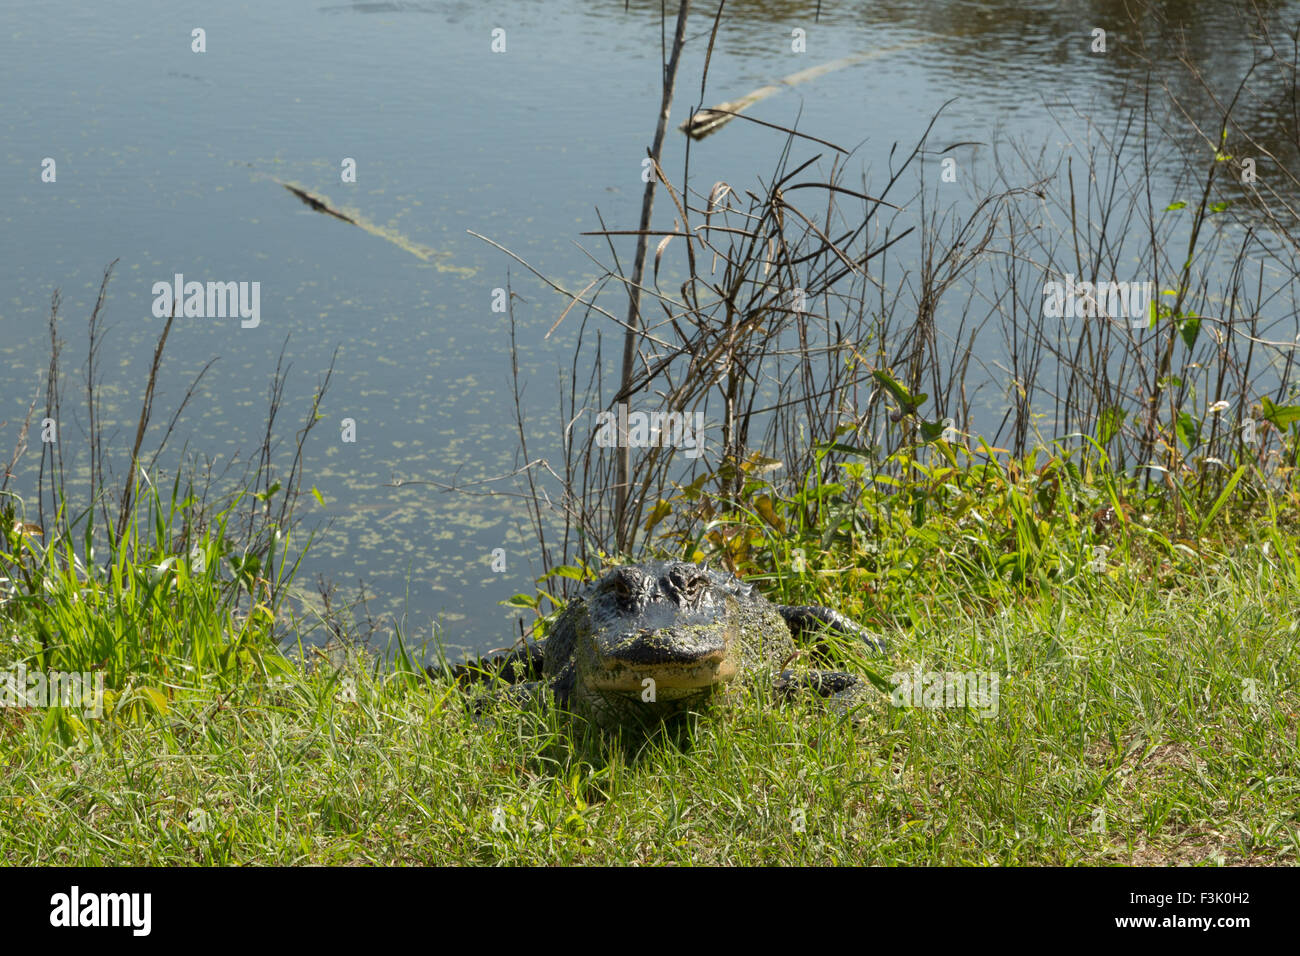 Eine Front auf Foto von einem amerikanischen Alligator in freier Wildbahn in der Nähe von Savannah in Georgia. Stockfoto